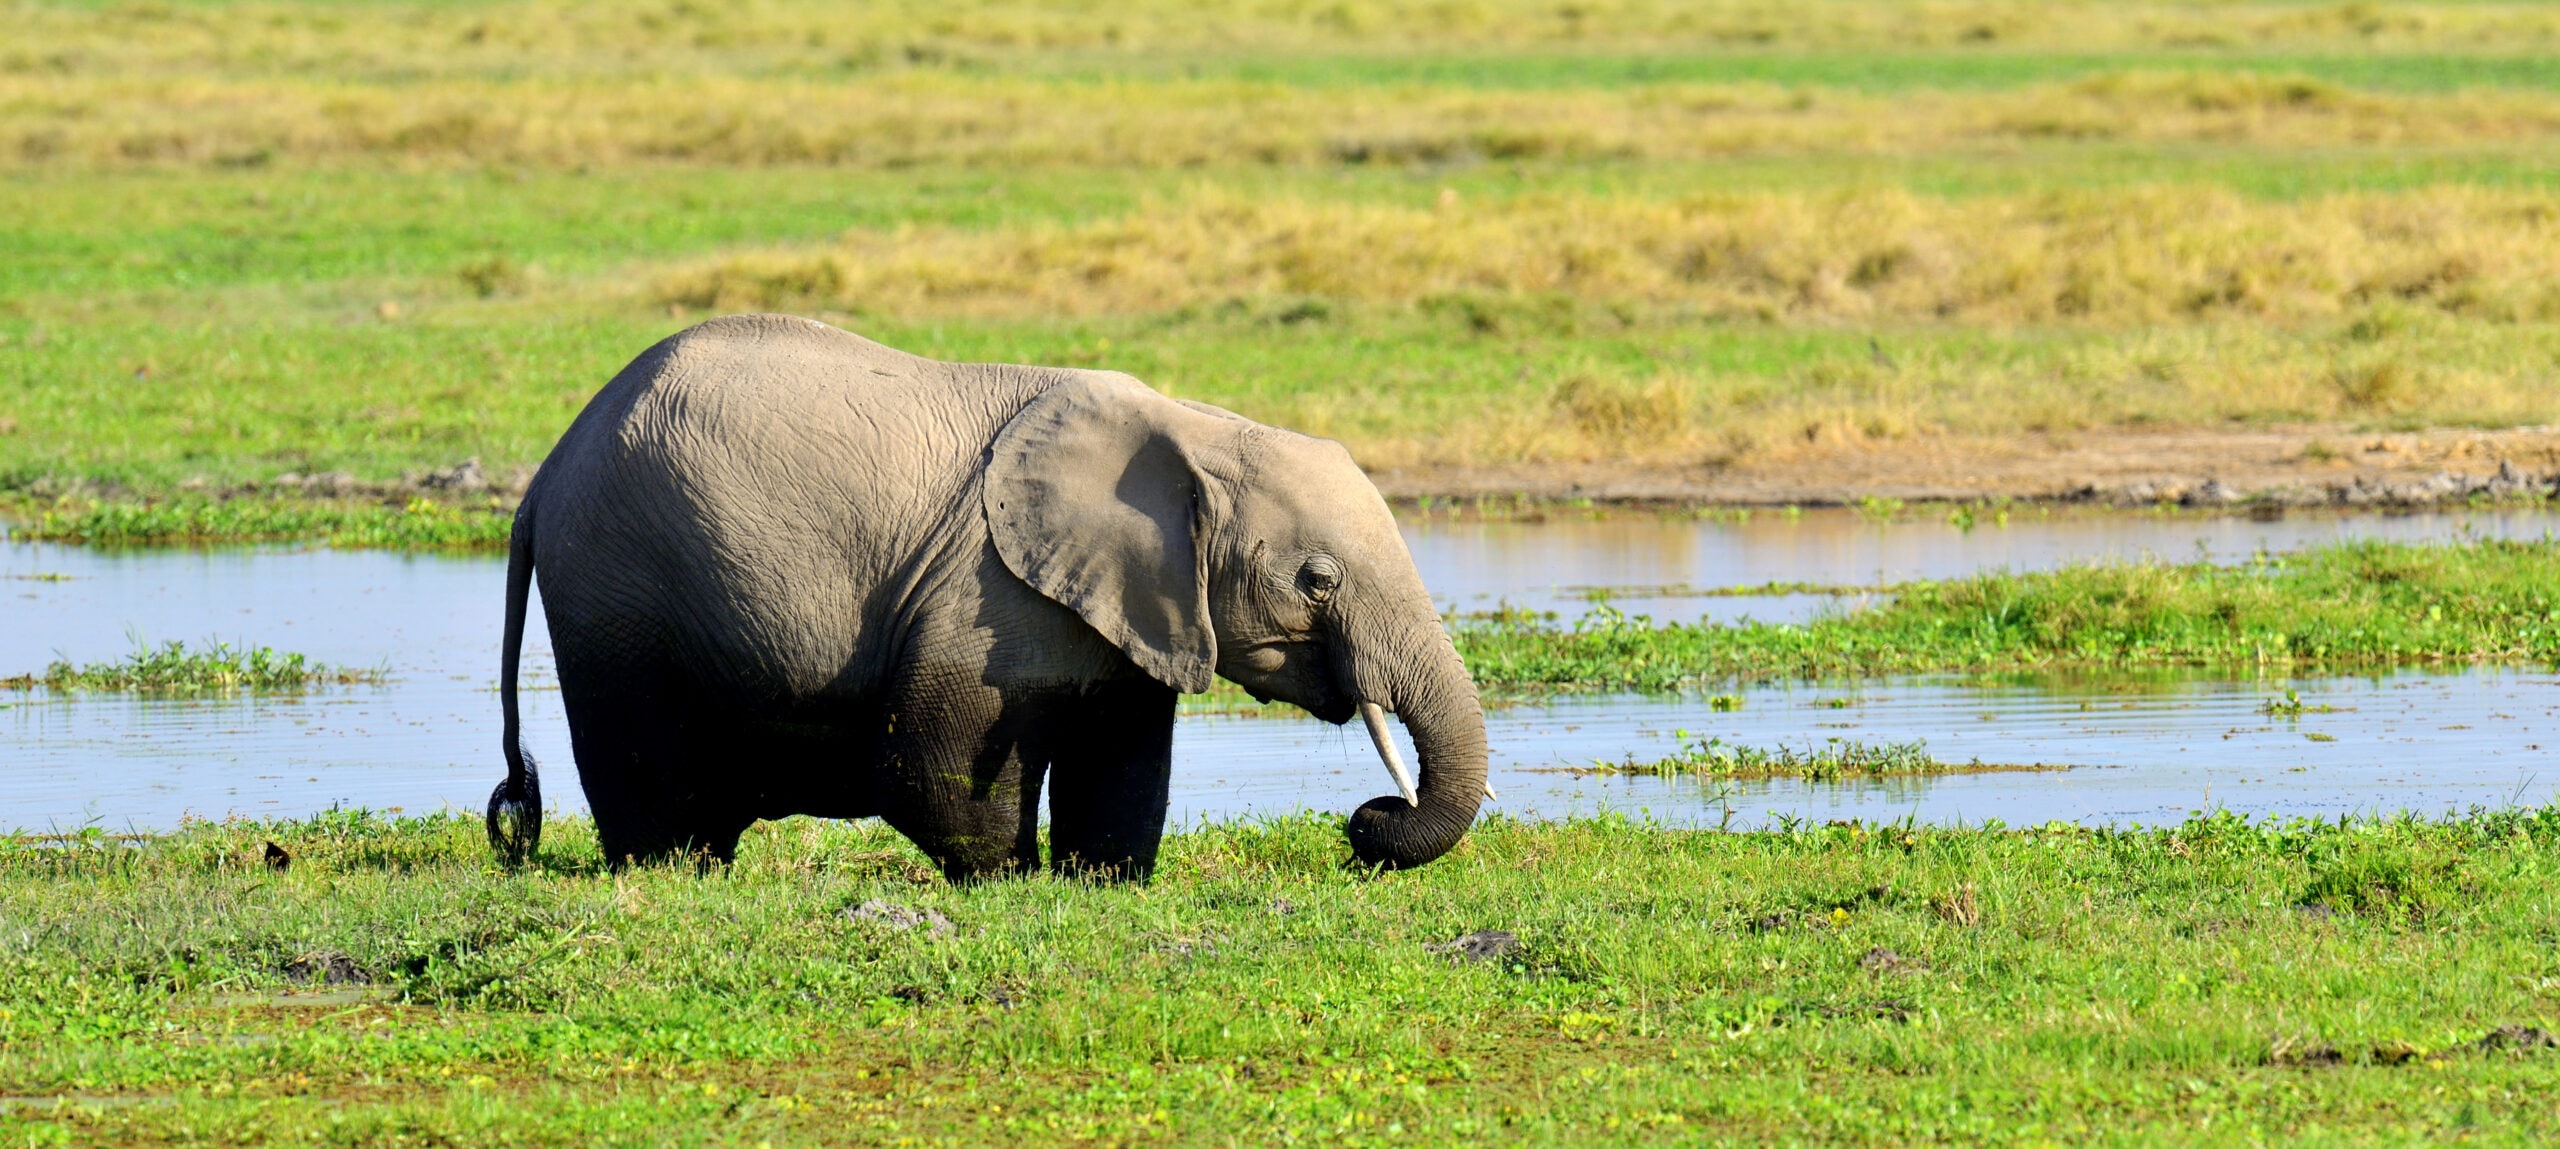 elephant in national park of kenya 2021 08 26 15 55 51 utc scaled